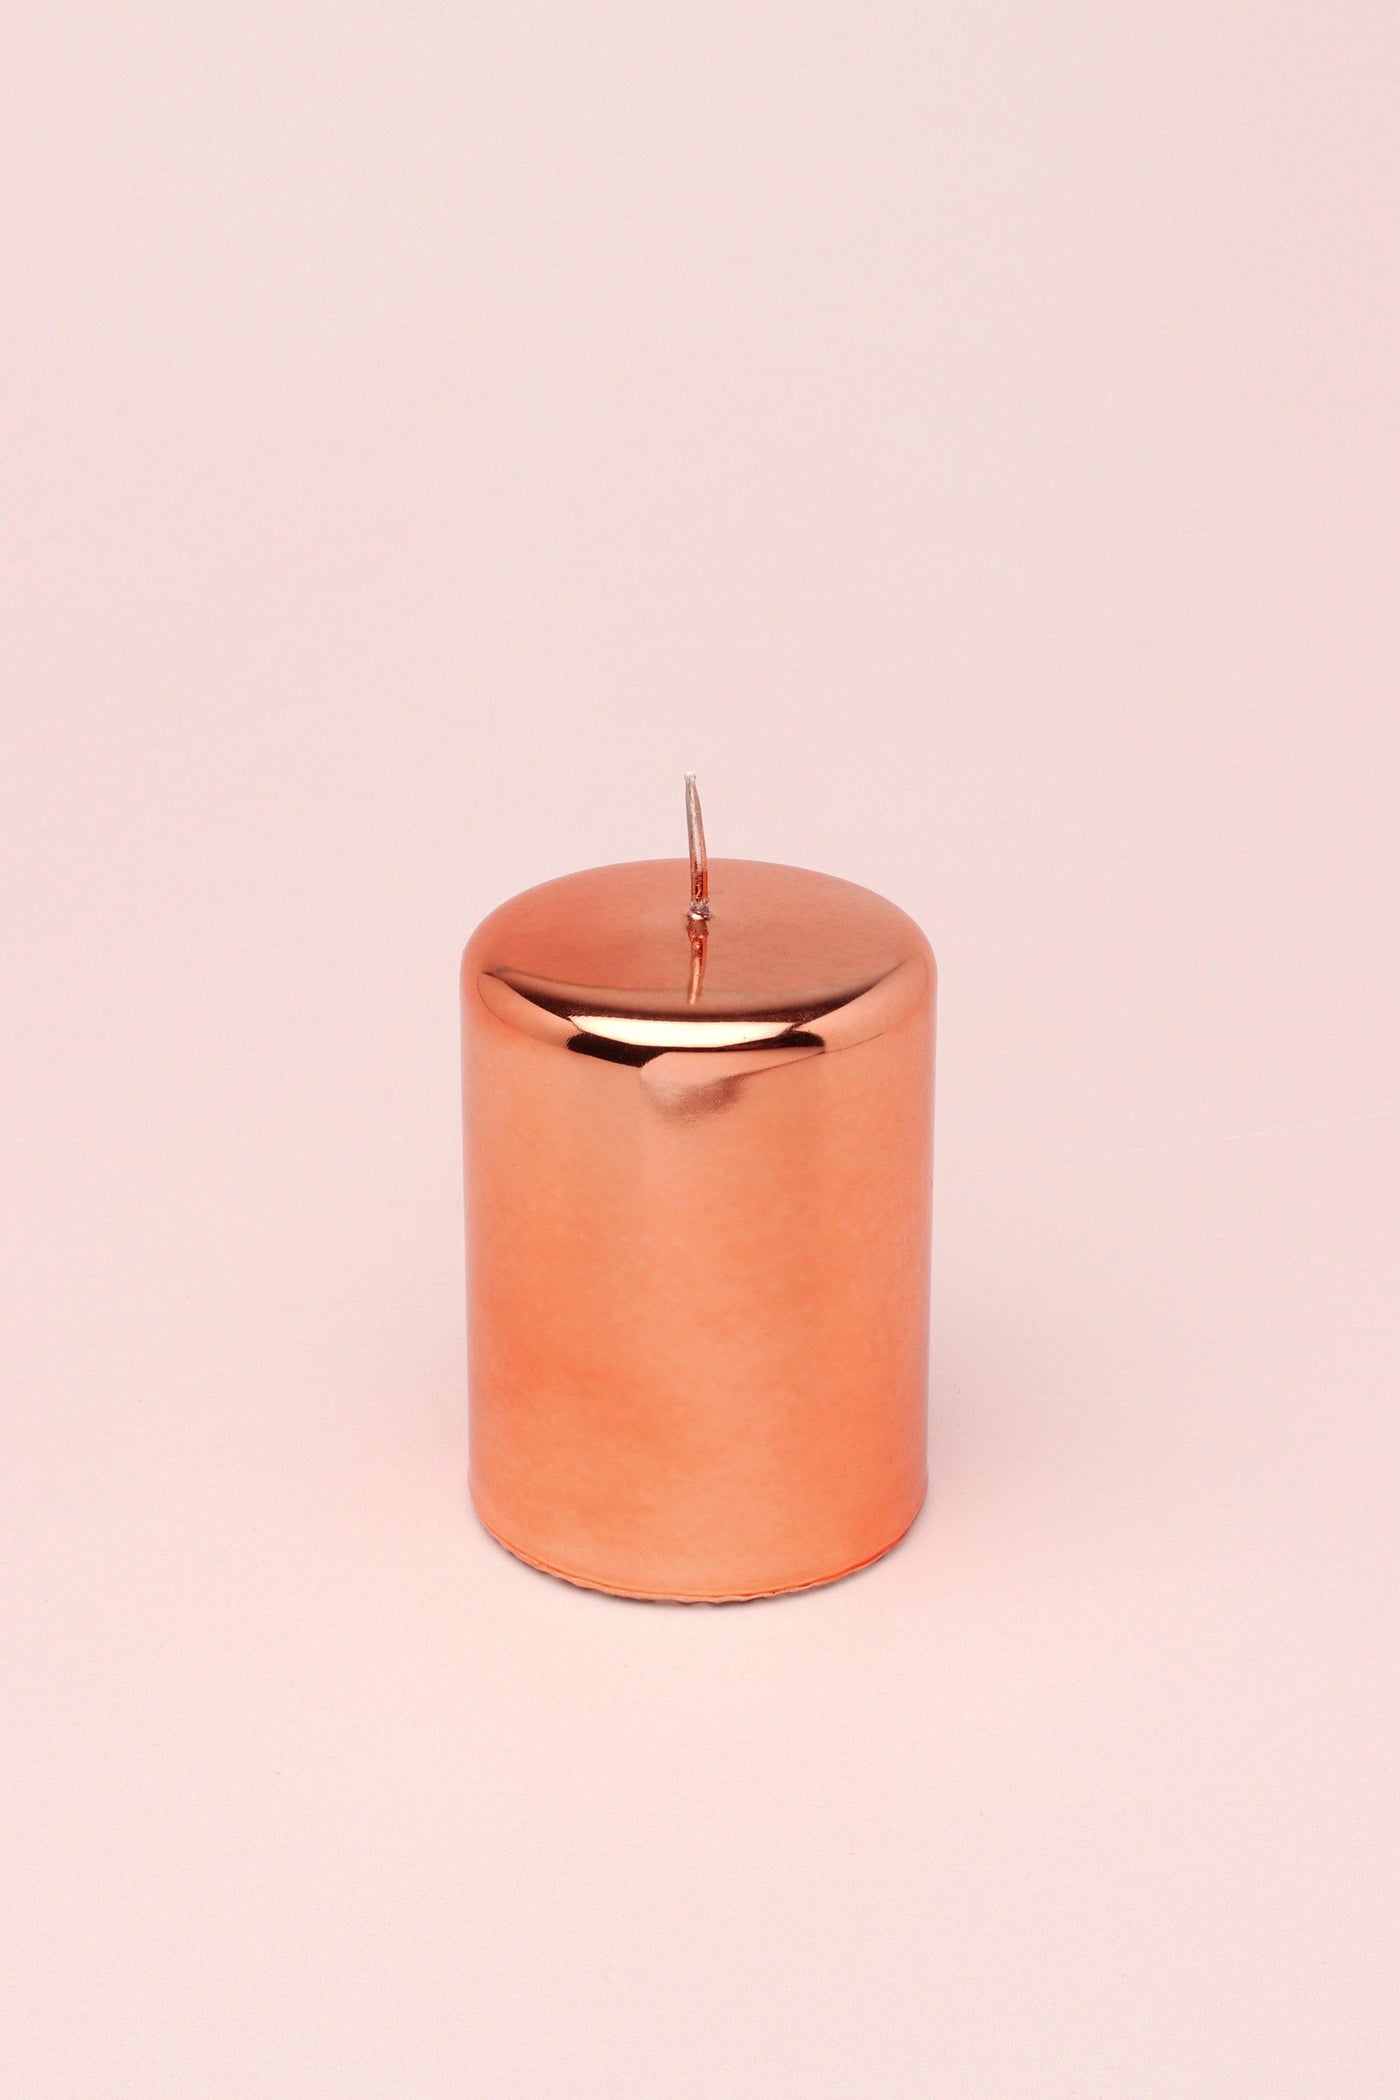 G Decor Candles Copper / Pillar Rose Gold Glass Effect Metallic Pillar and Ball Candles